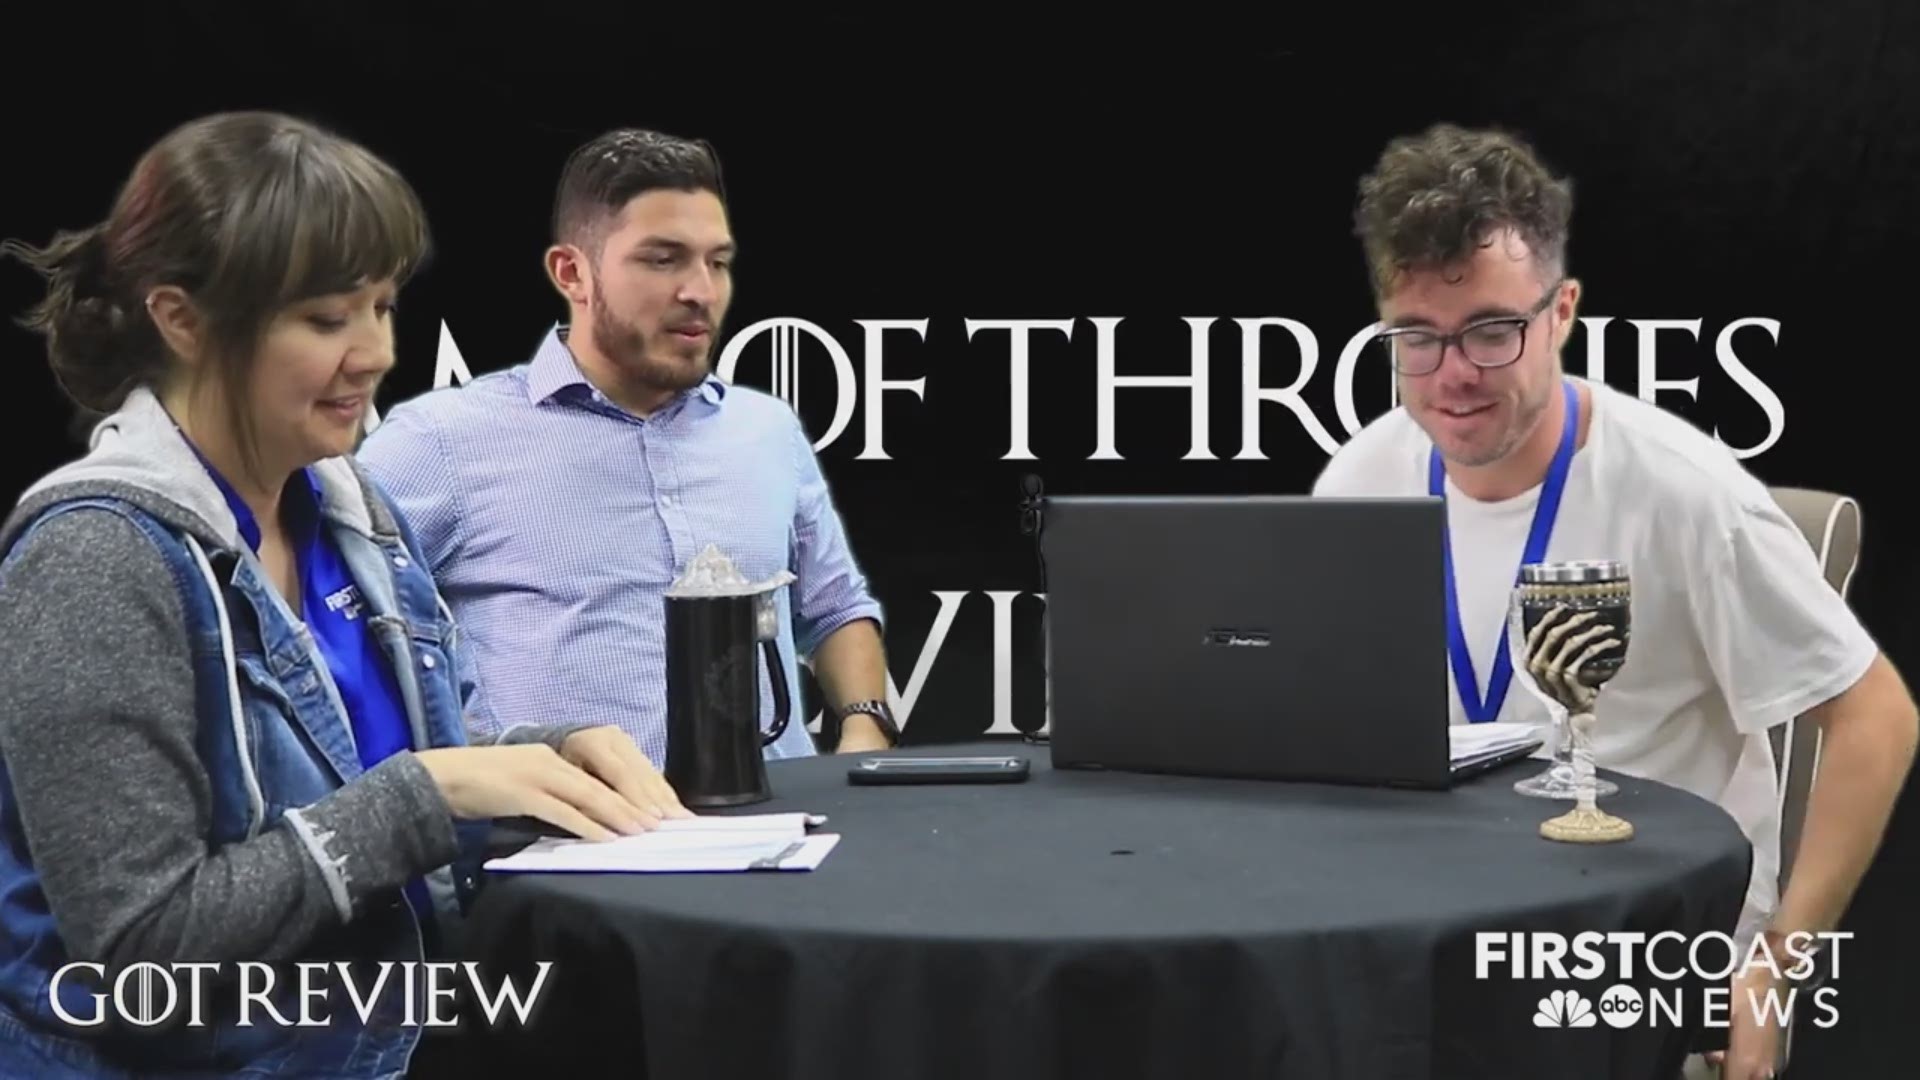 First Coast News staff talks GOT Season 8, reviews 'Winterfell'